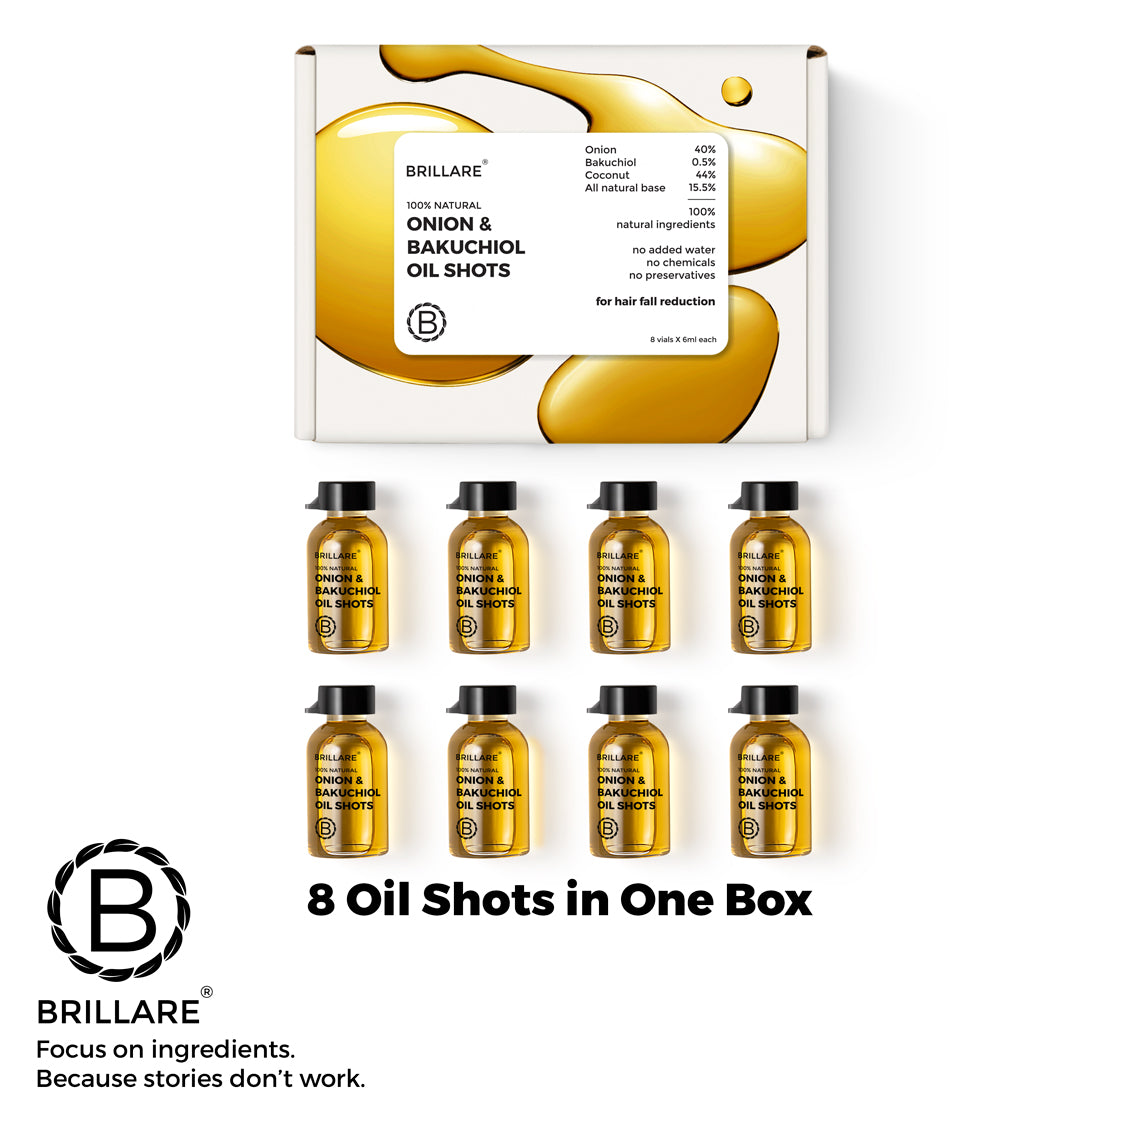 Onion & Bakuchiol Oil Shots For Hair Fall Reduction